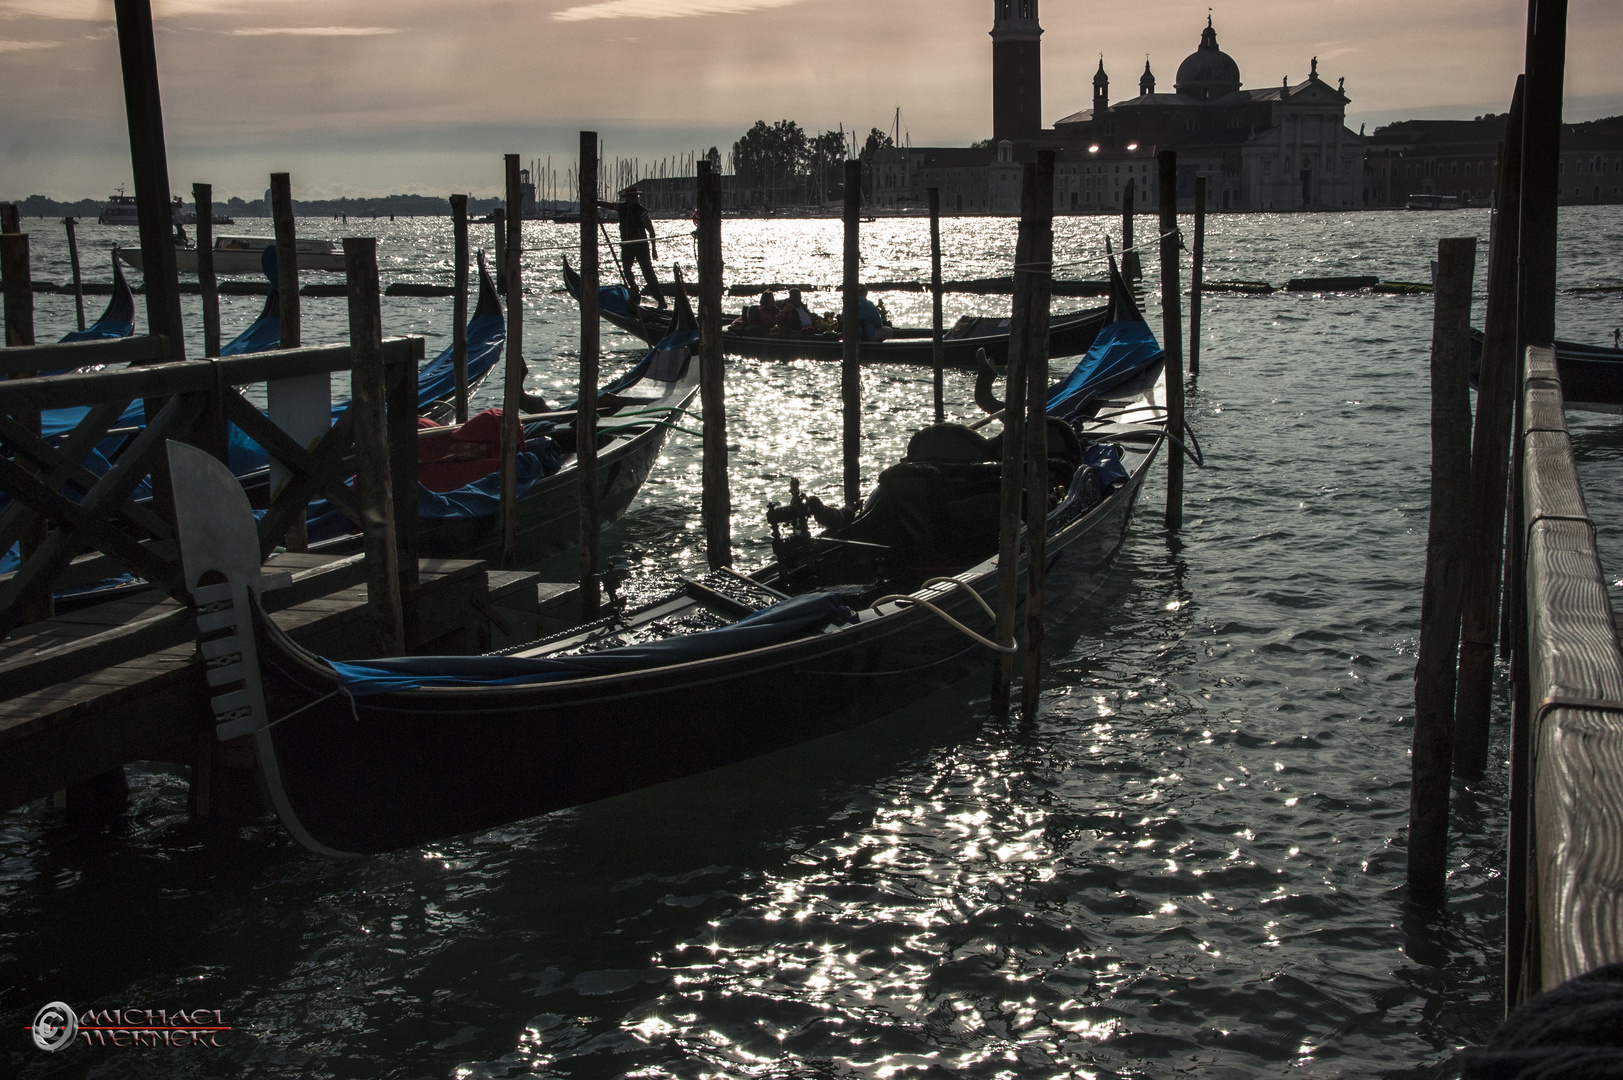 Gondeln in Venedig